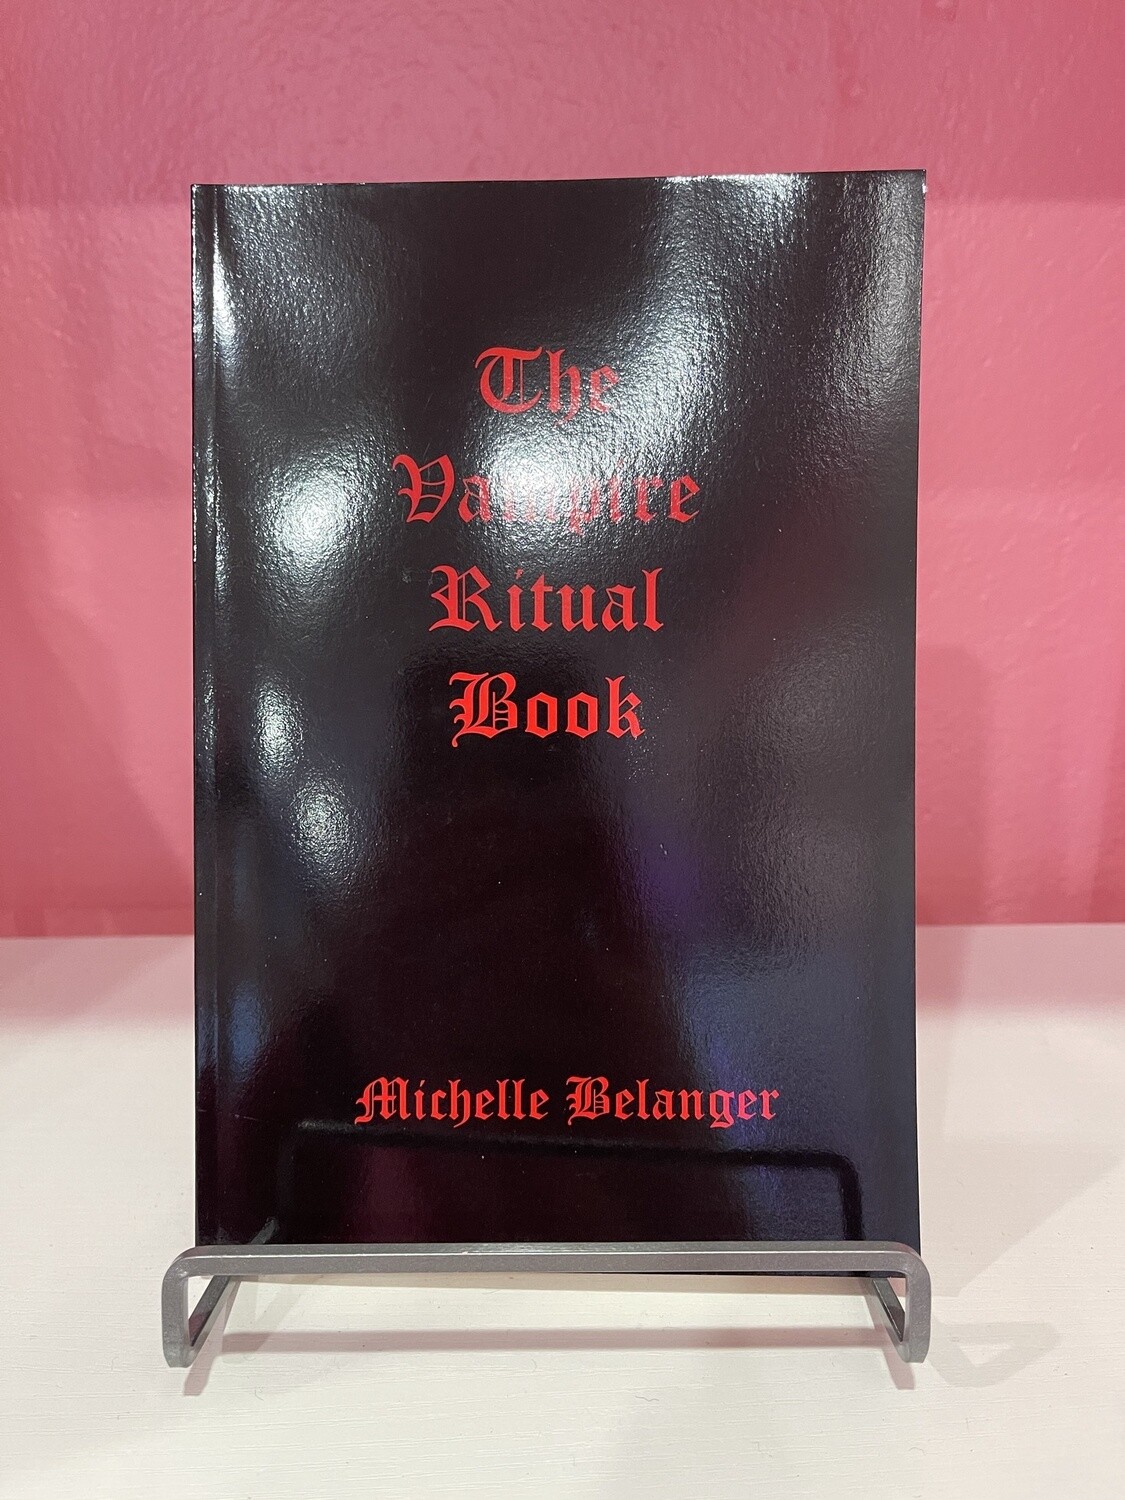 Vampire Ritual Book